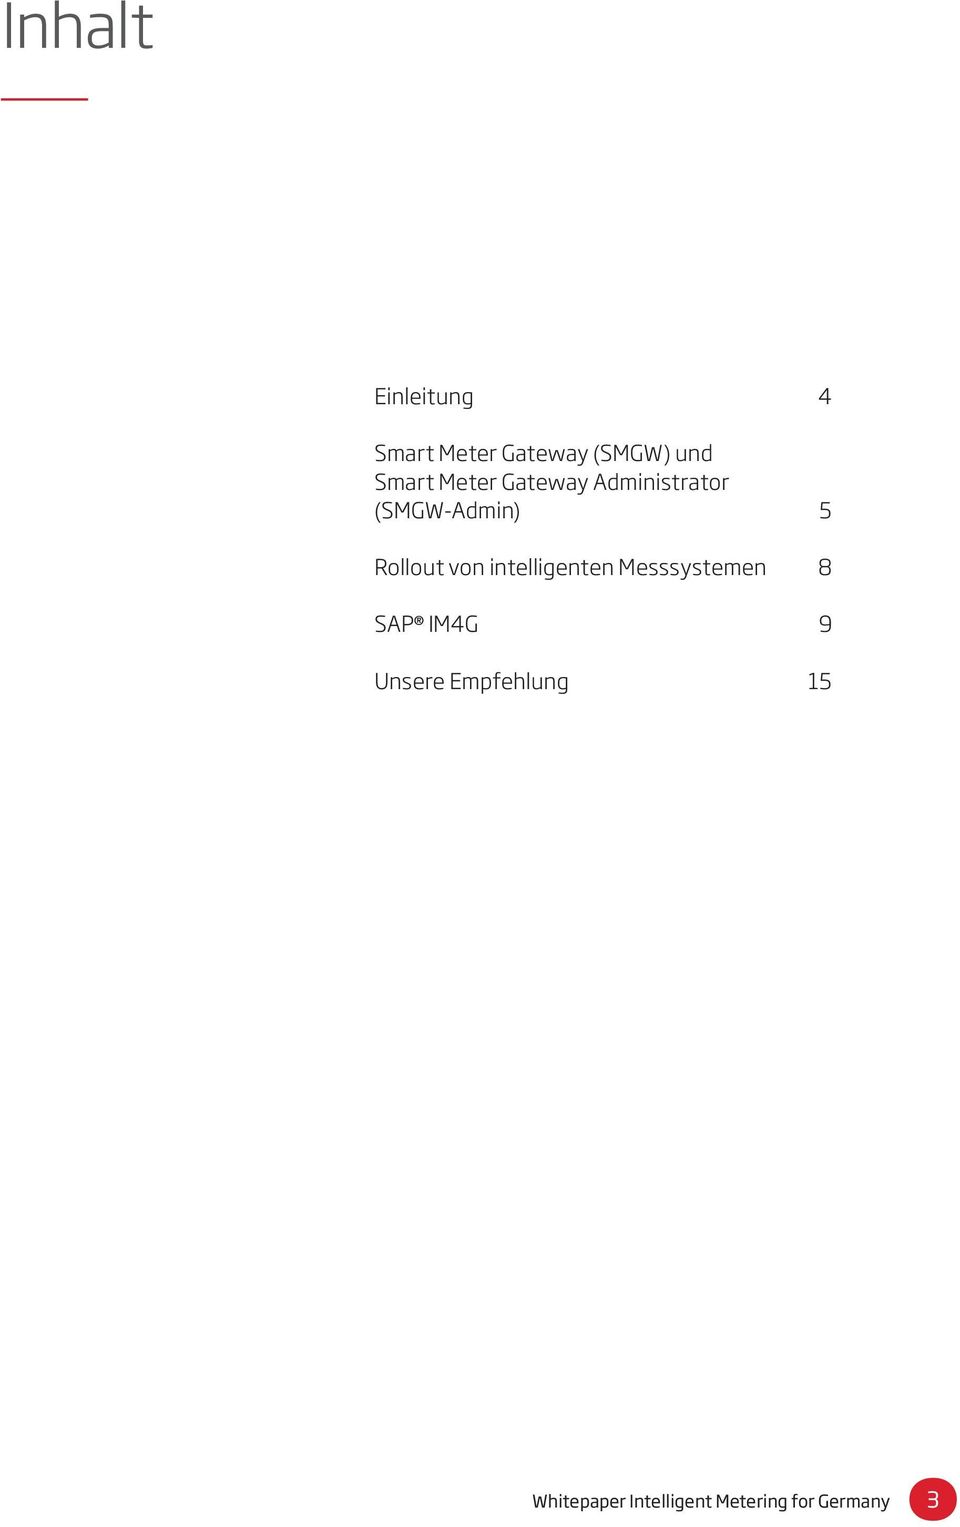 Rollout von intelligenten Messsystemen 8 SAP IM4G 9